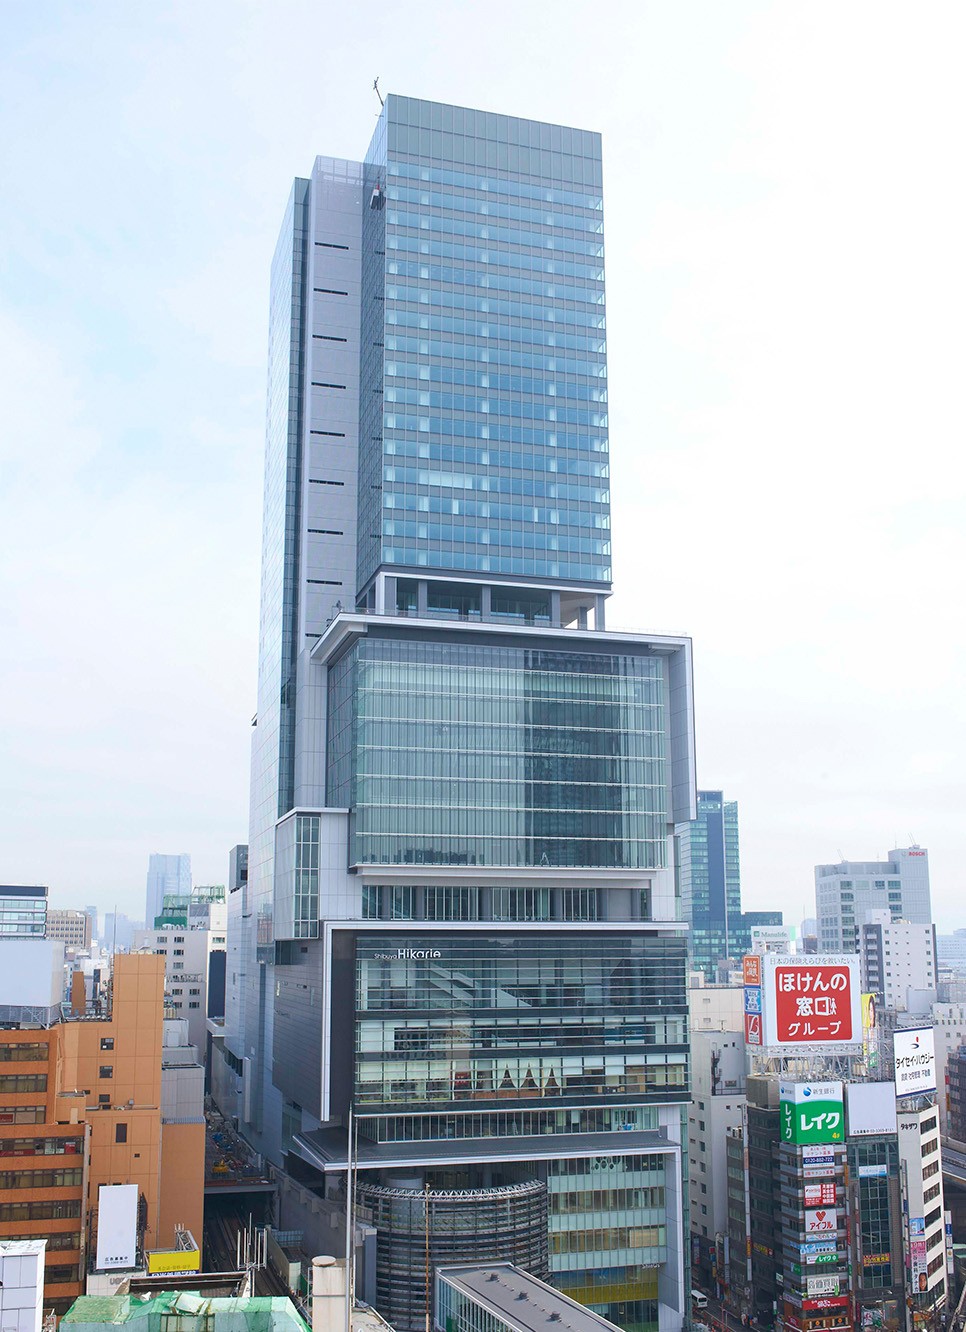 Shibuya Hikarie